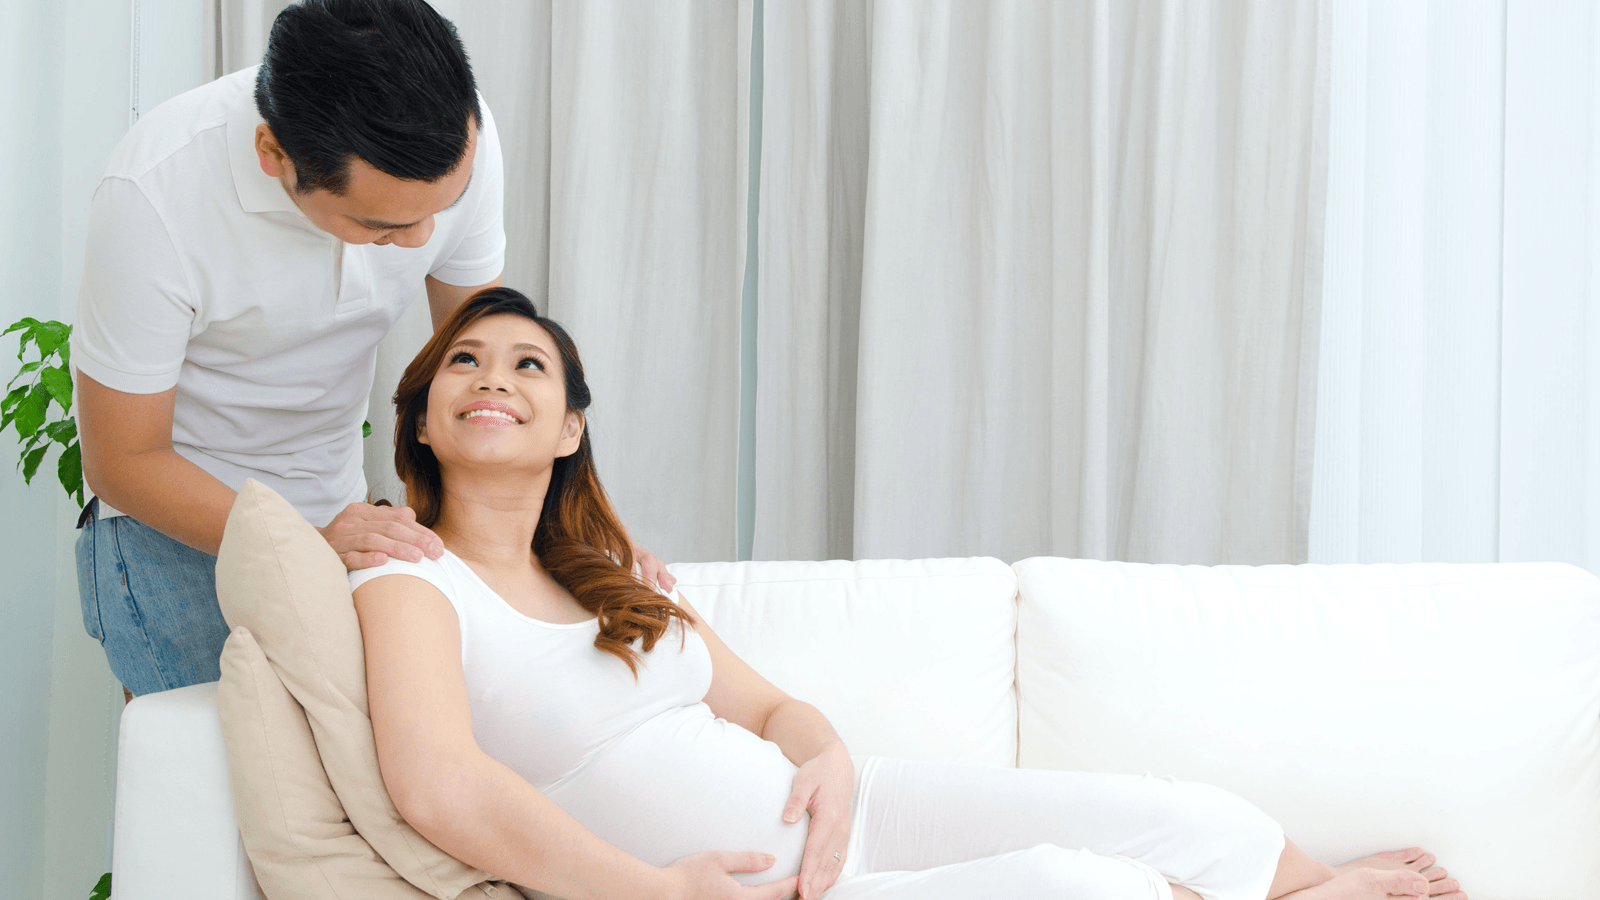 Mua bảo hiểm thai sản là bước chuẩn bị vô cùng có trách nhiệm của bạn đối với chính bản thân và đứa con yêu sắp chào đời. Genvita không nói quá lên đâu, mời bạn cùng chúng tôi phân tích nhé!